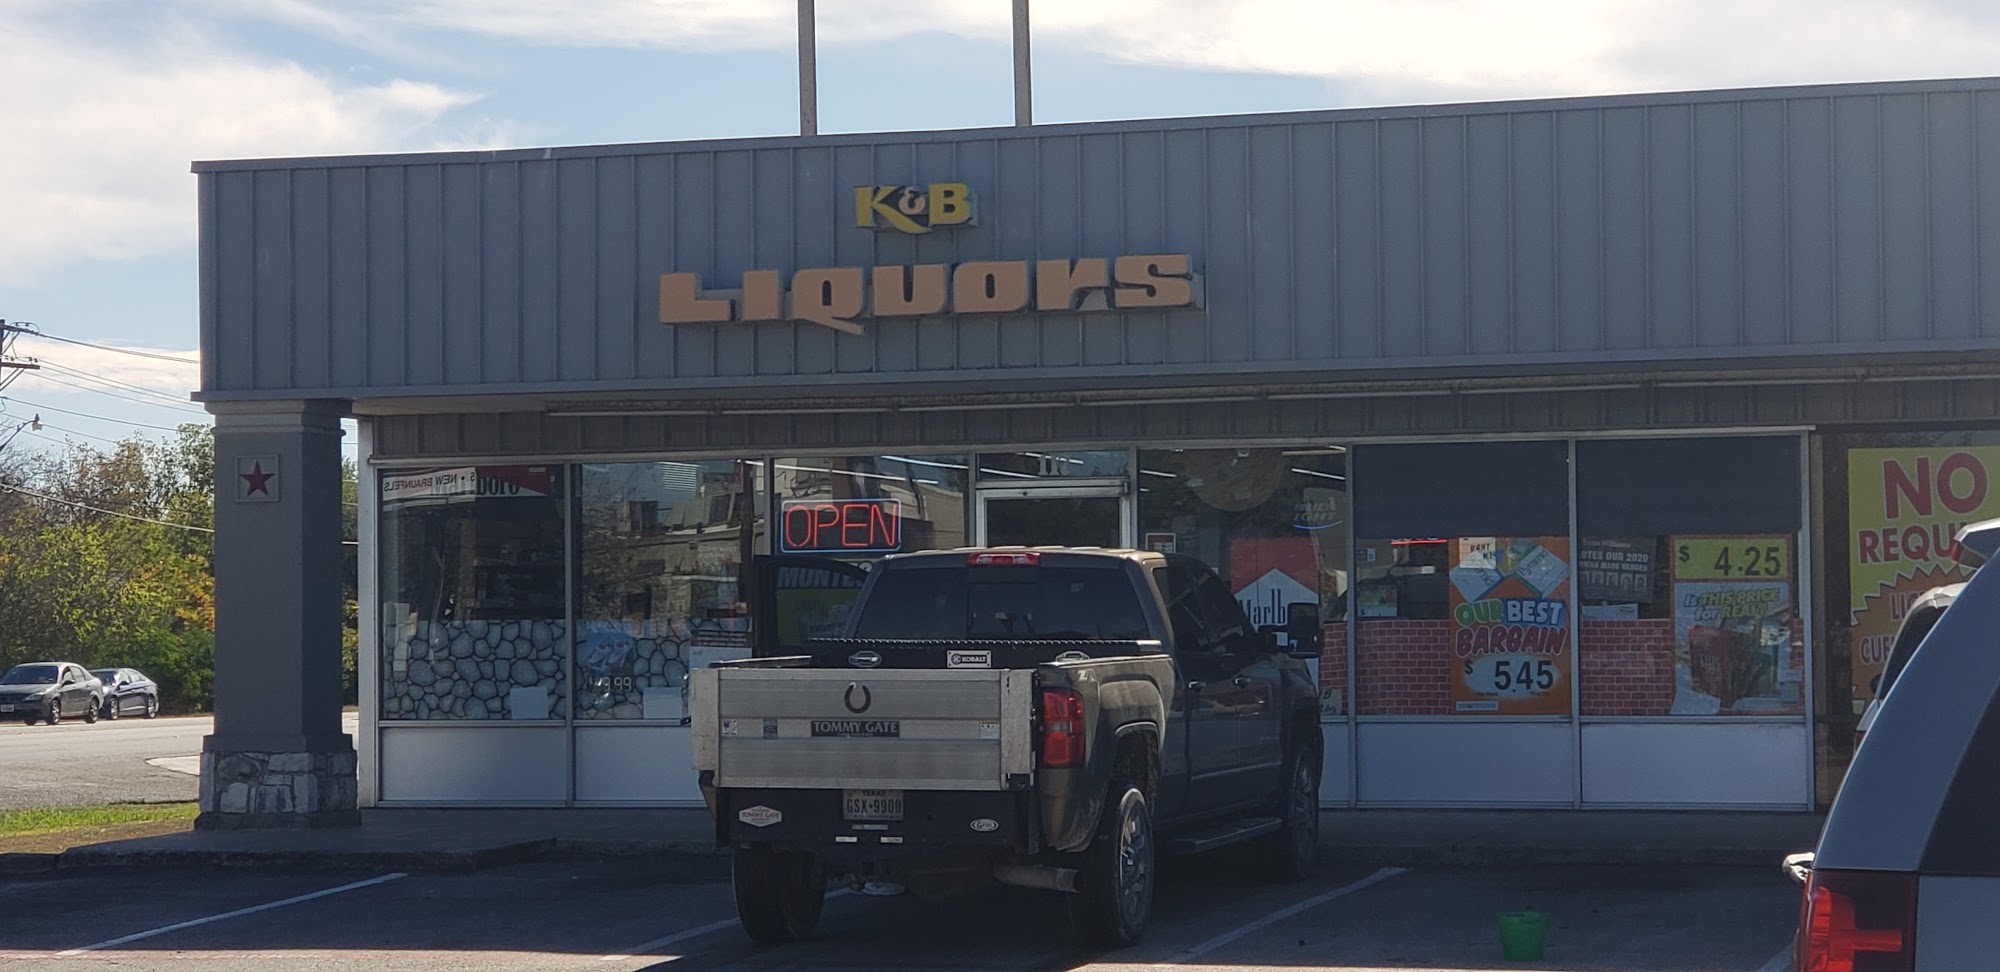 K&B Liquors